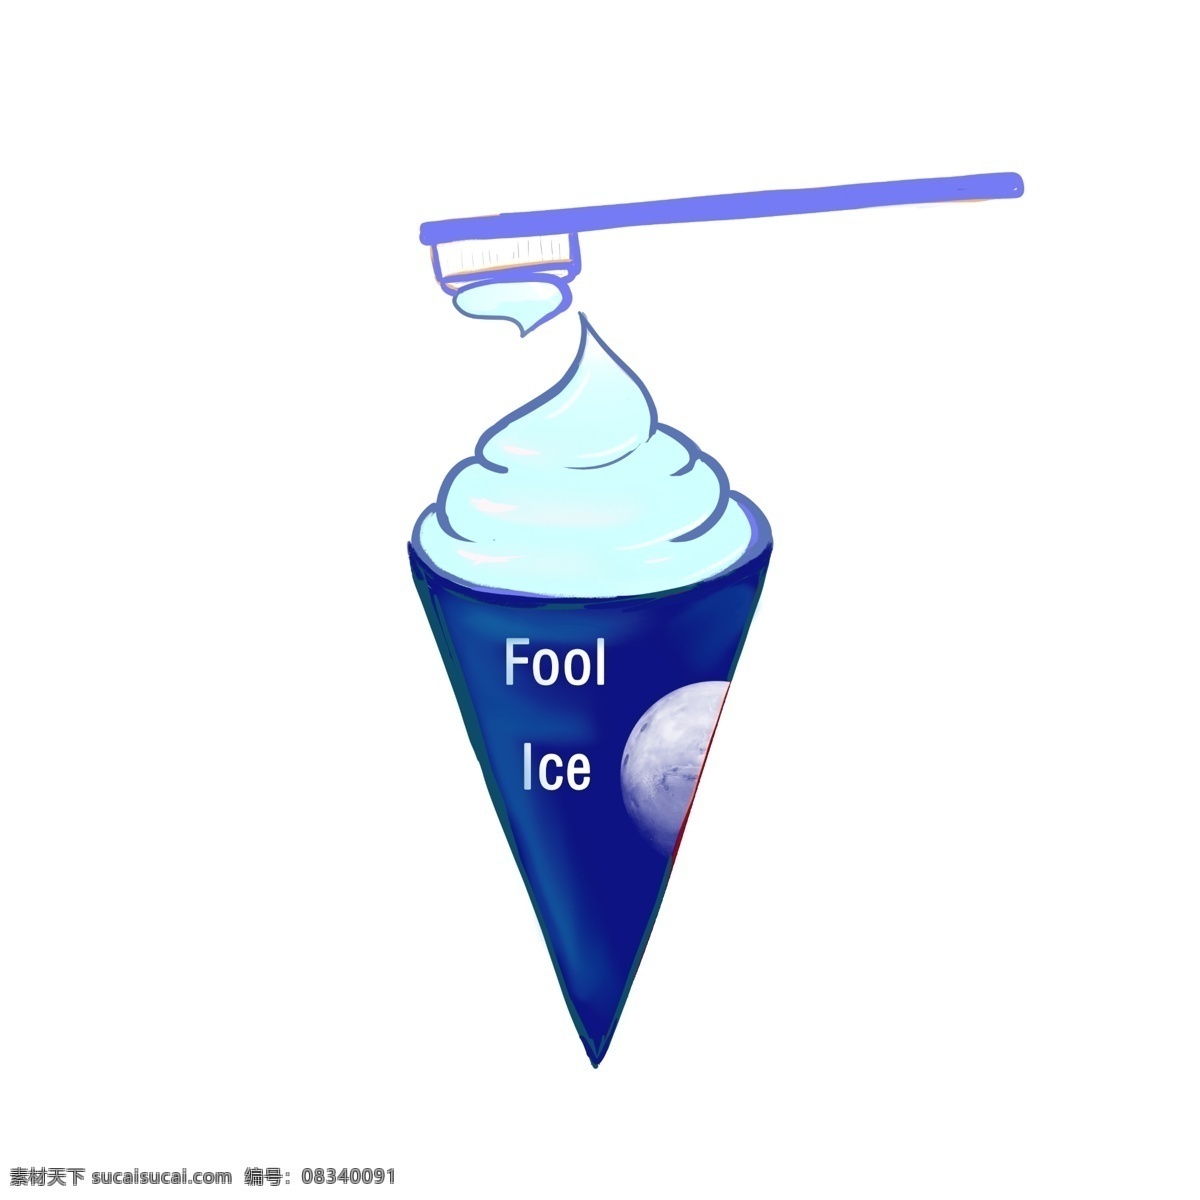 愚人节 傻瓜 冰淇淋 蓝色冰淇淋 冰爽 夏季 零食 傻瓜冰淇淋 冰淇淋插图 插画